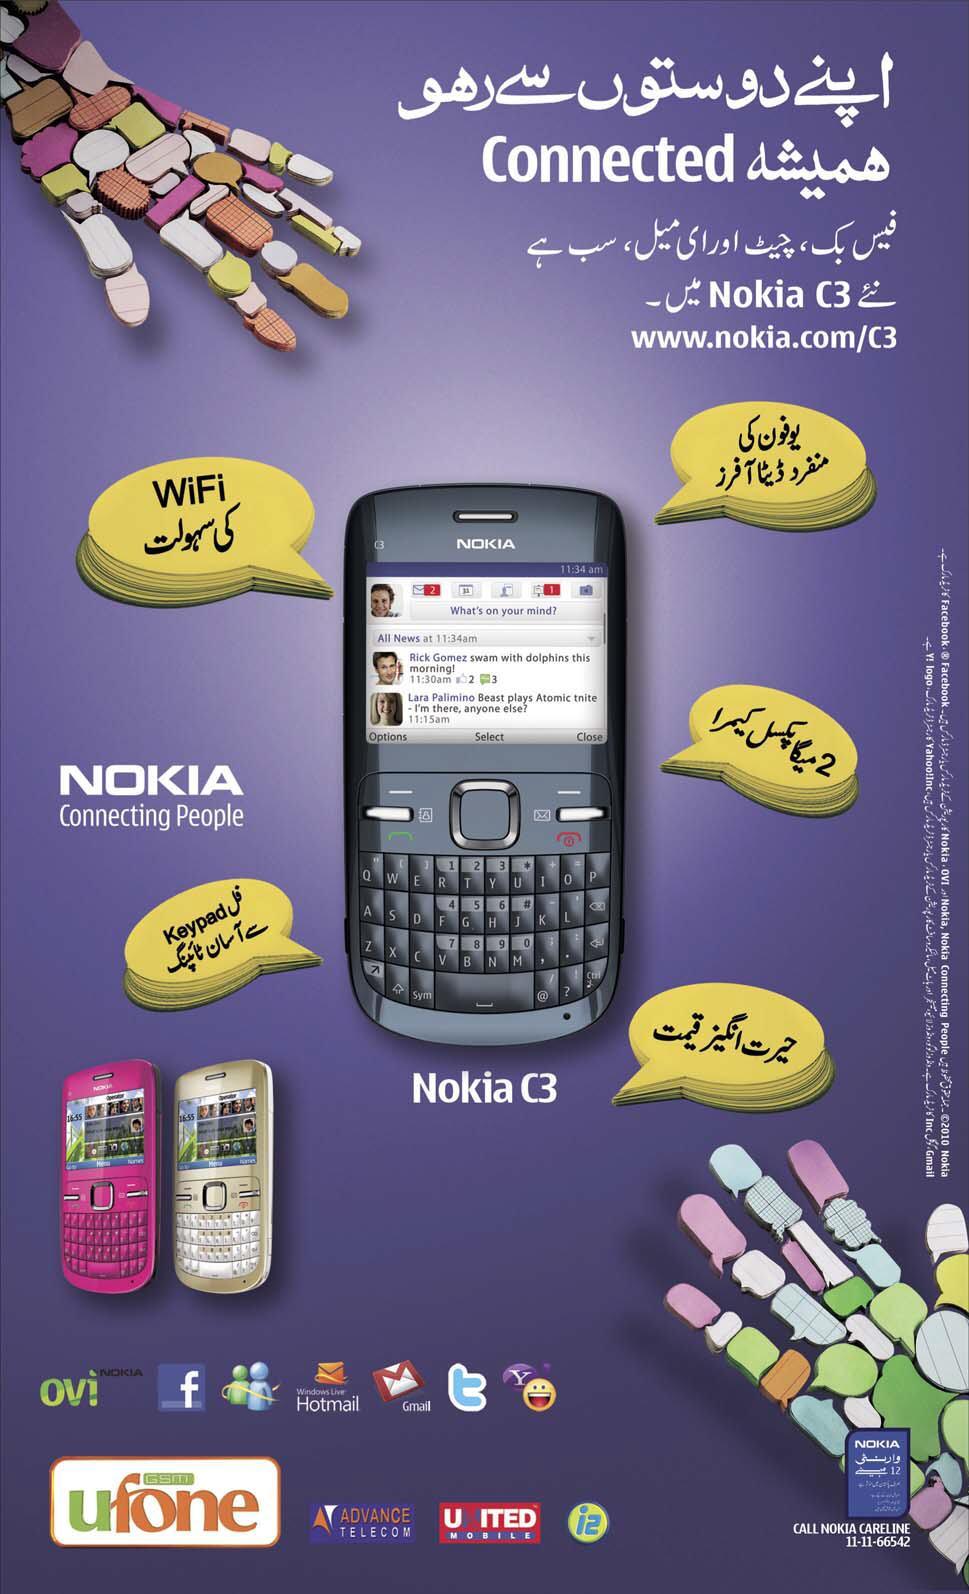 Features of Nokia C3 in Urdu